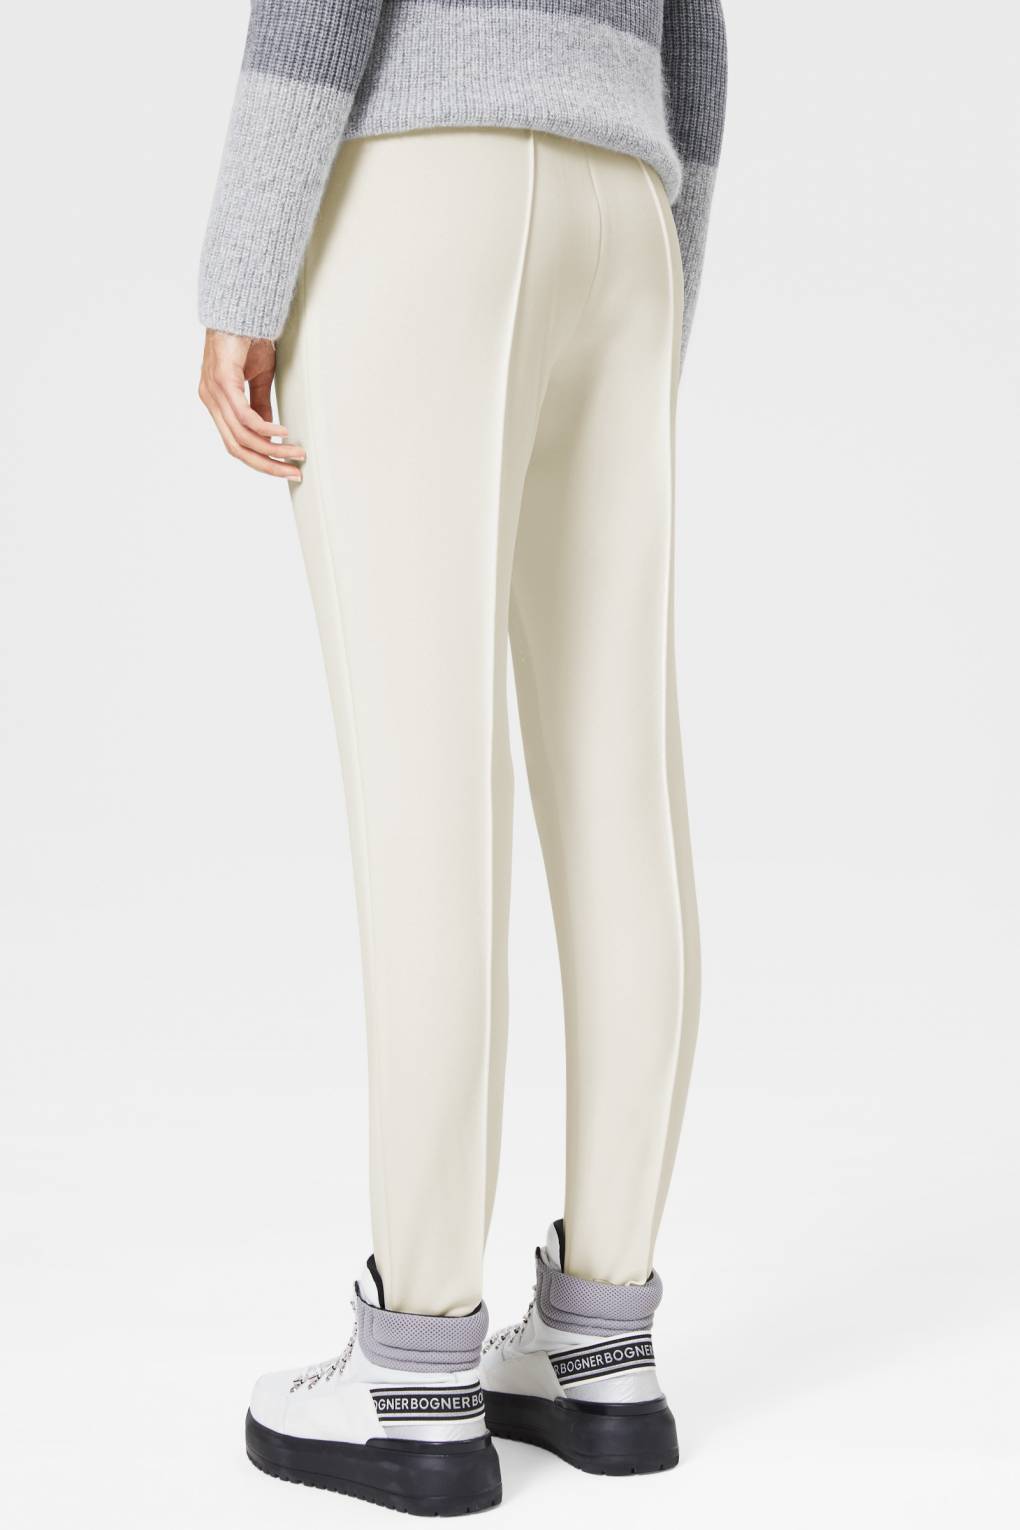 Womens Bogner Elaine Stretch Ski Pants White/Cream Size L / US 12 / EU 42